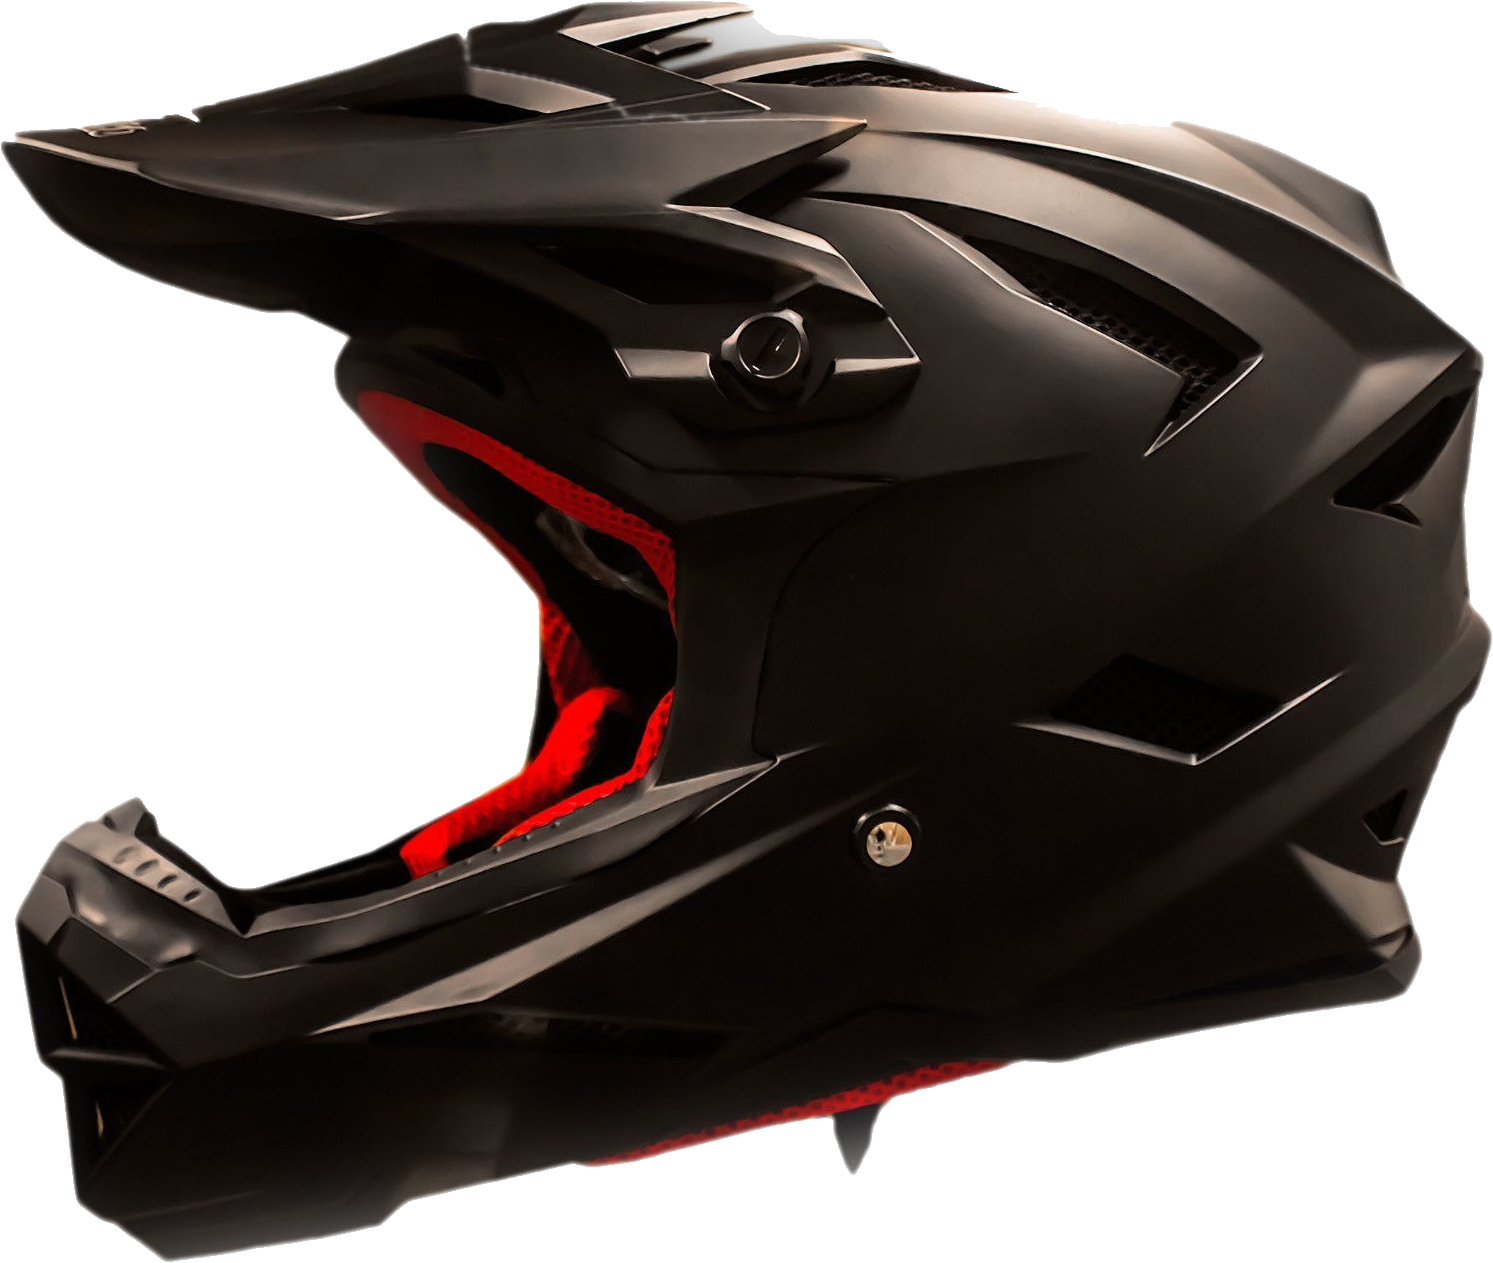 Bicycle helmet PNG image